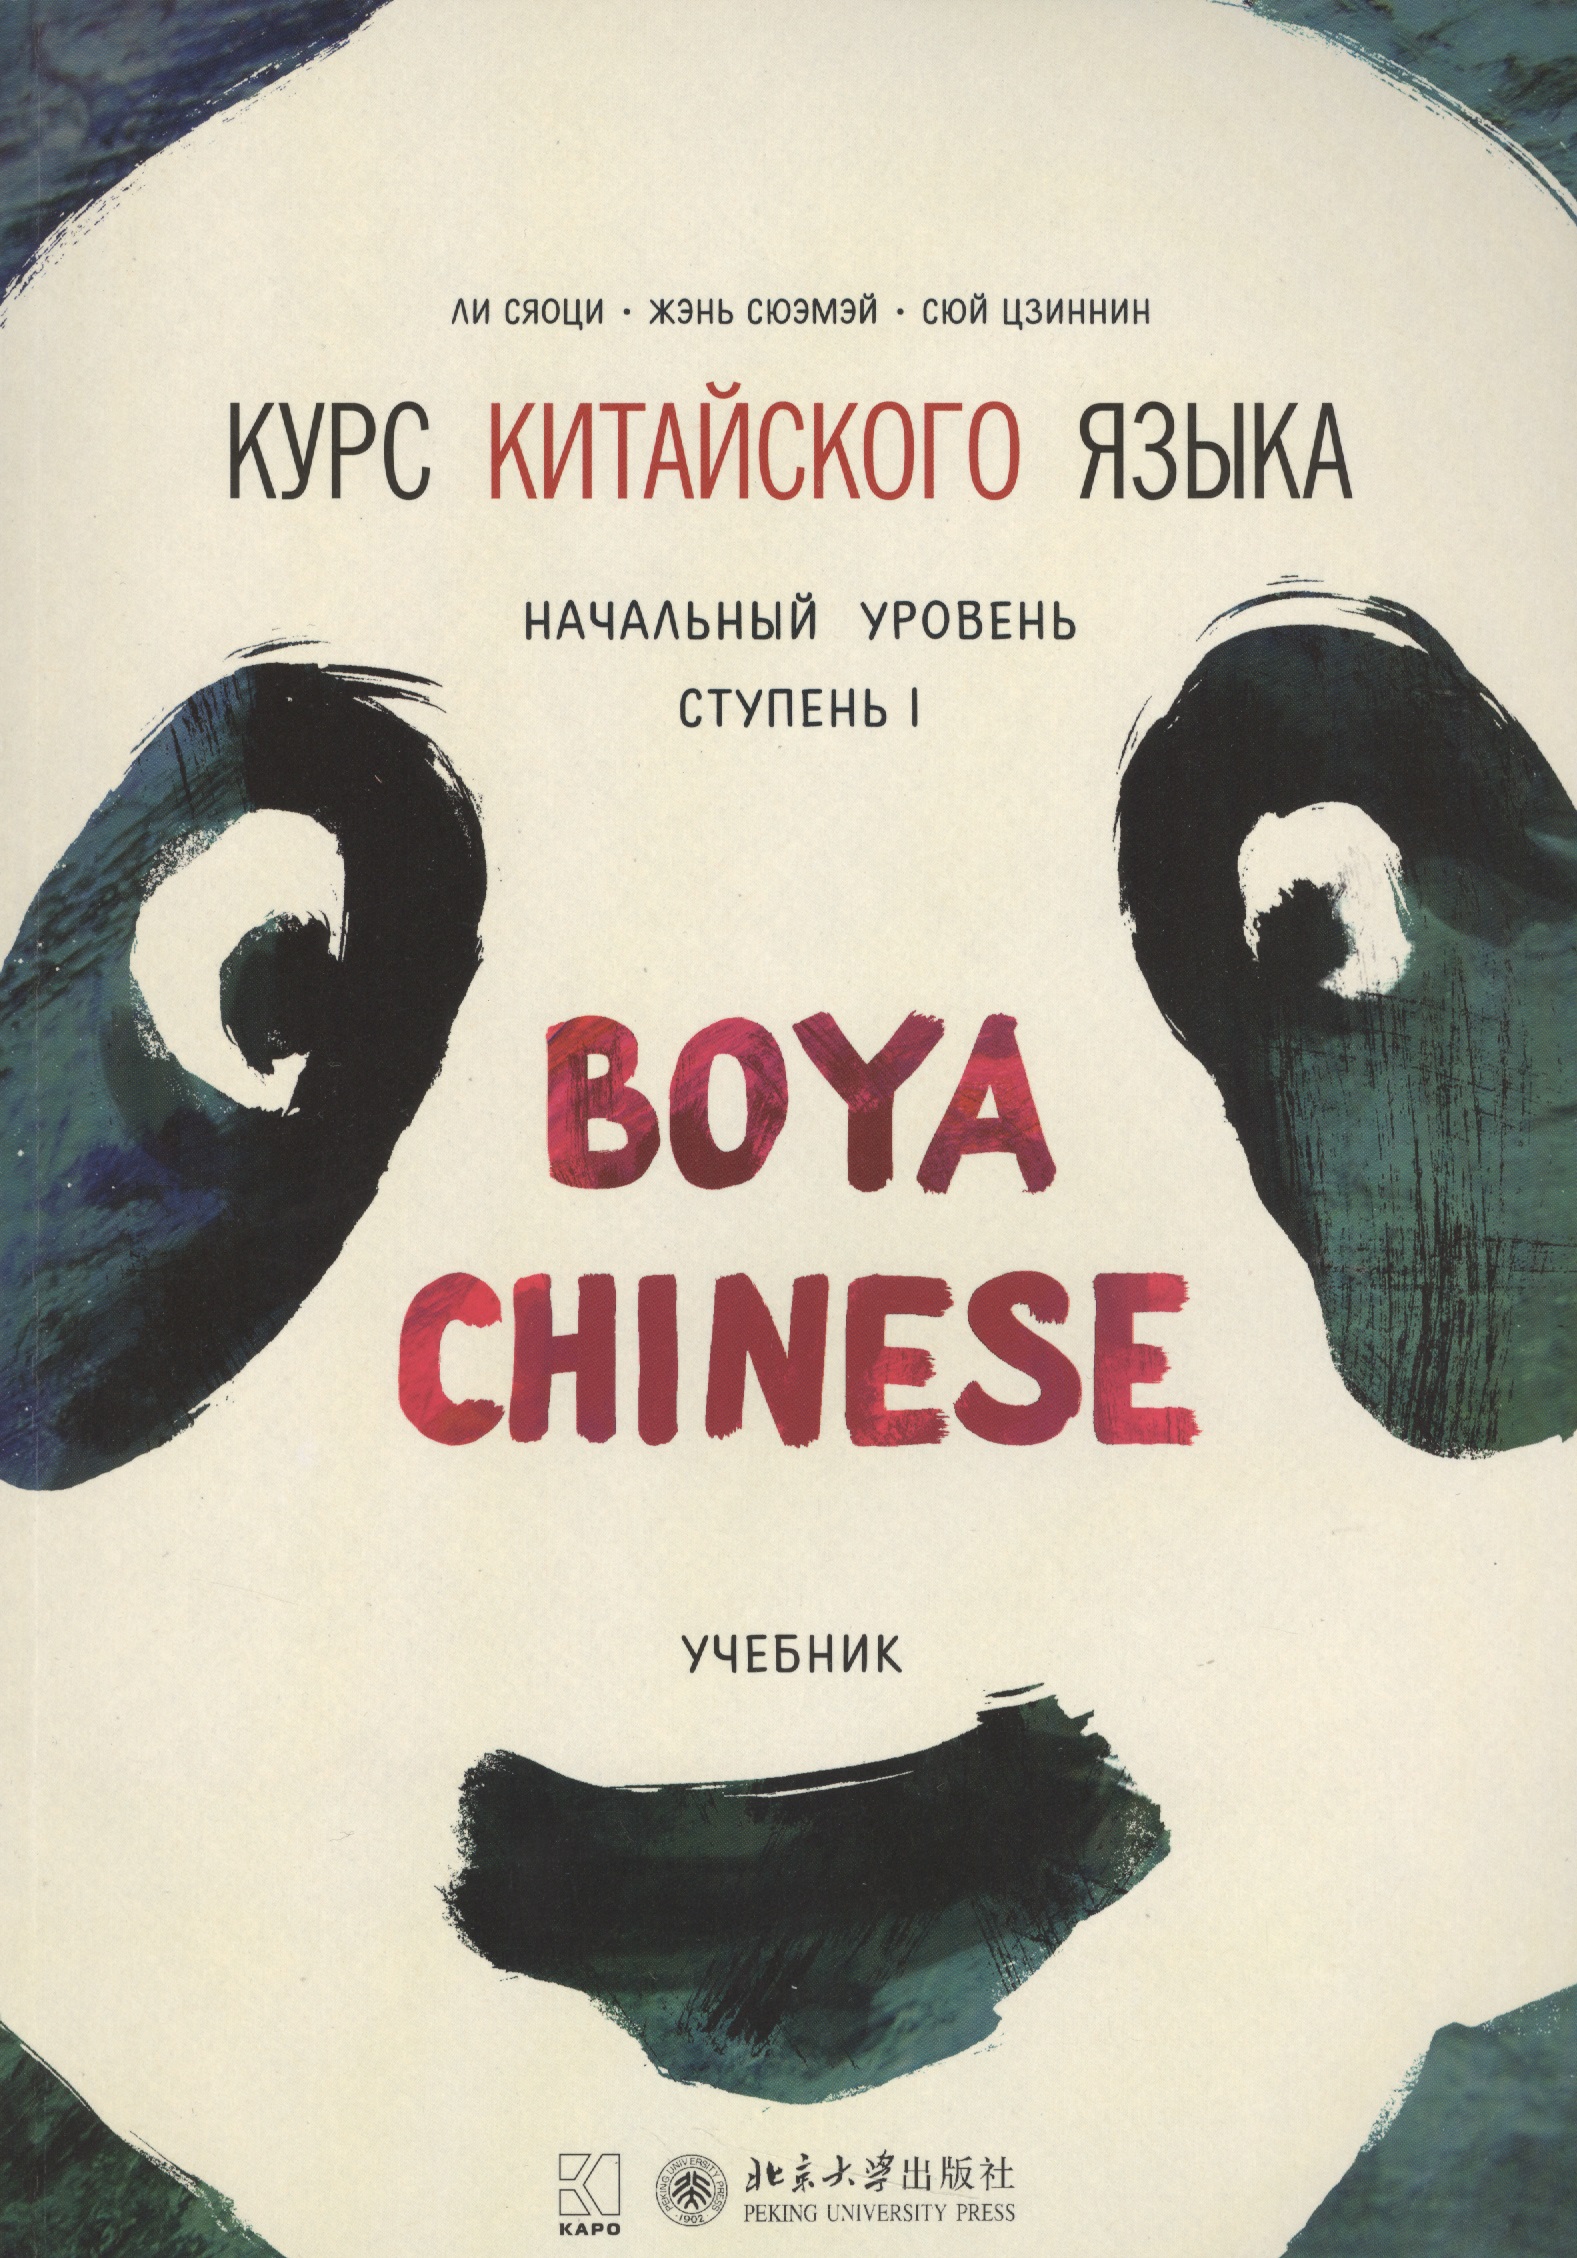 Ли Сяоци Курс китайского языка Boya Chinese. Начальный уровень. Ступень 1. Учебник цена и фото